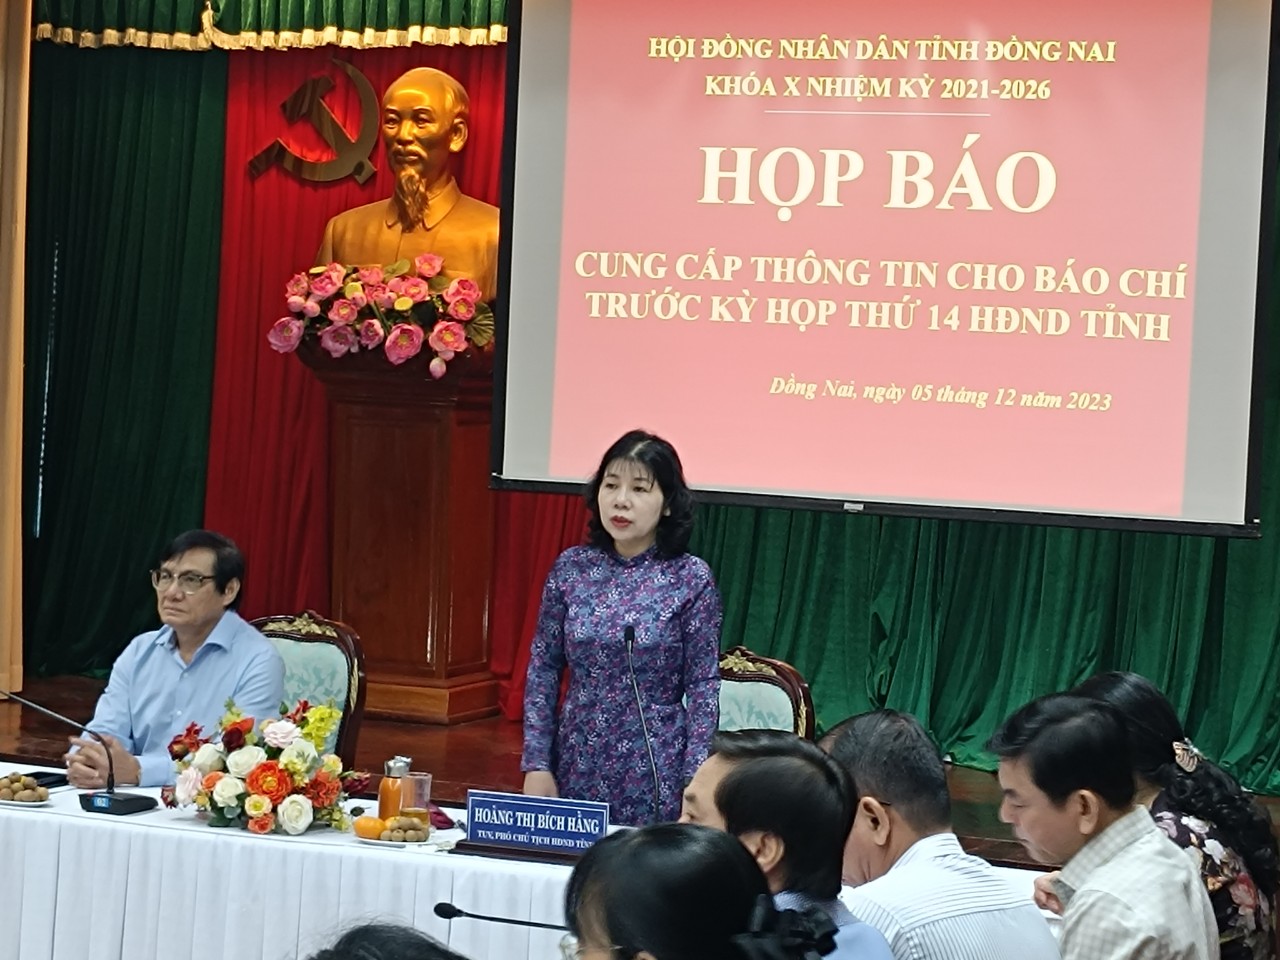 Phó chủ tịch HĐND tỉnh Đồng Nai Hoàng Thị Bích Hằng phát biểu tại buổi họp báo